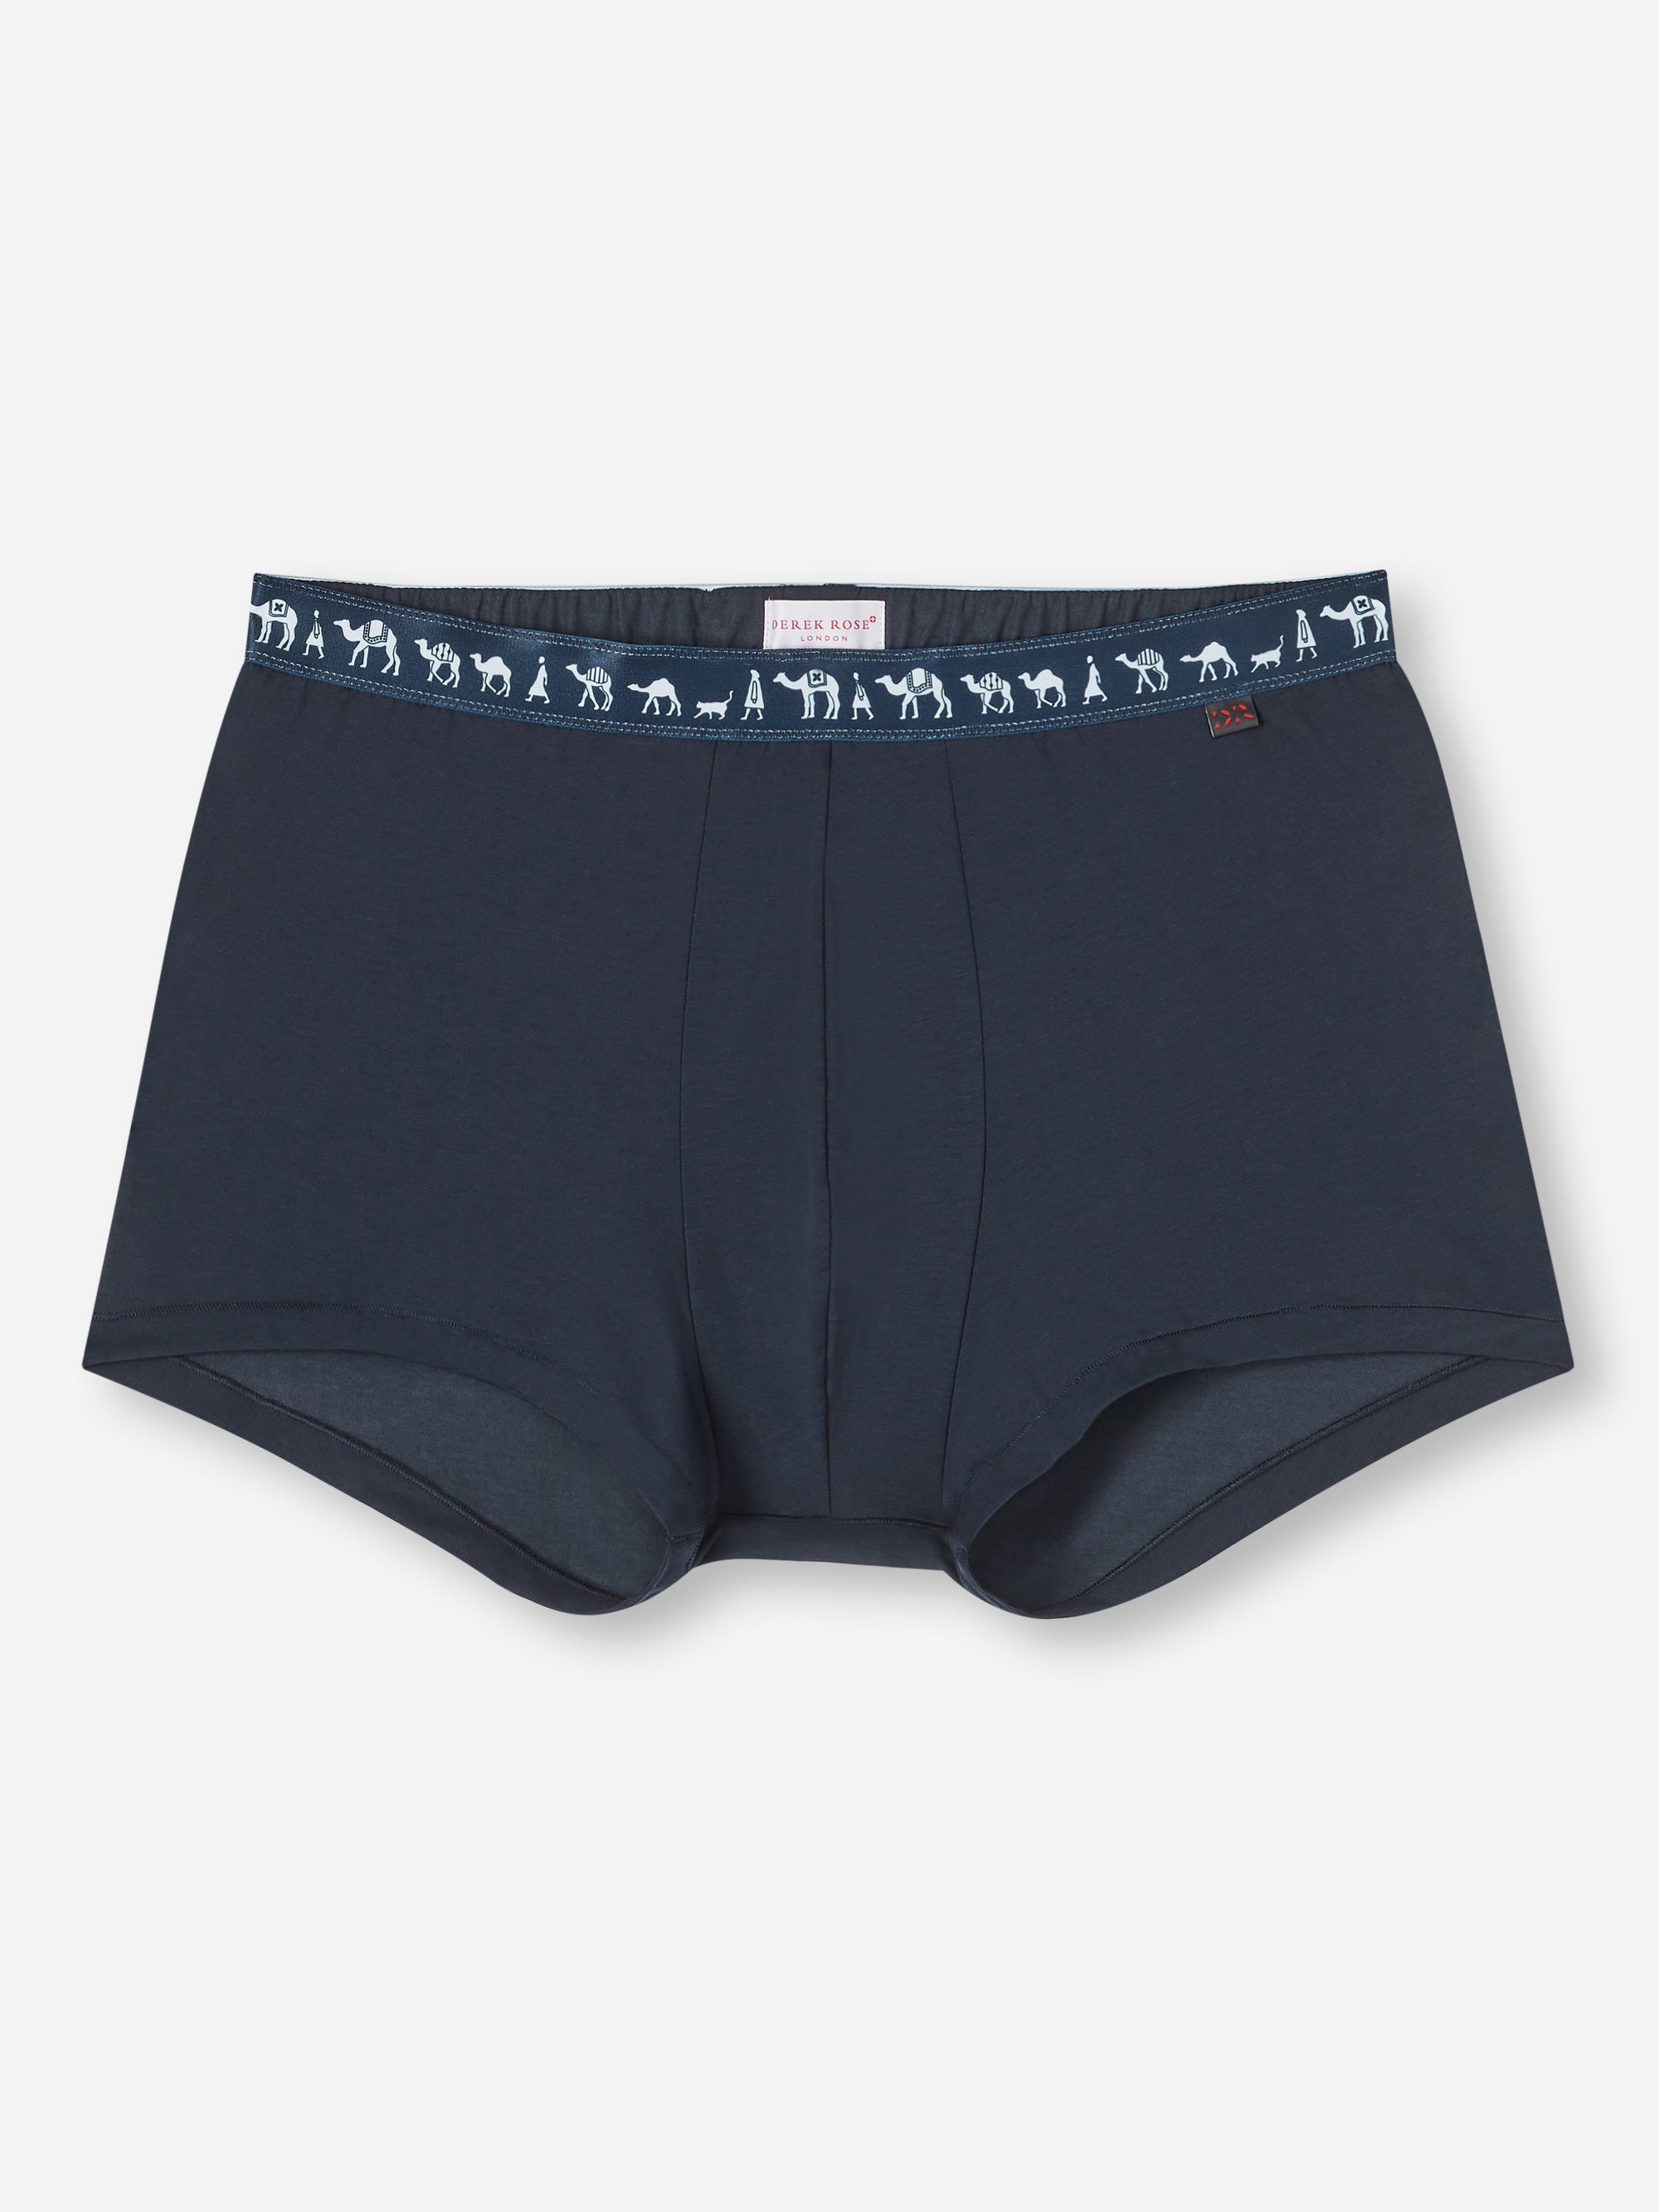 Pierre Donna Boxer Underwear For Men (pack of 2)(navy blue & grey) –  PIERREDONNA